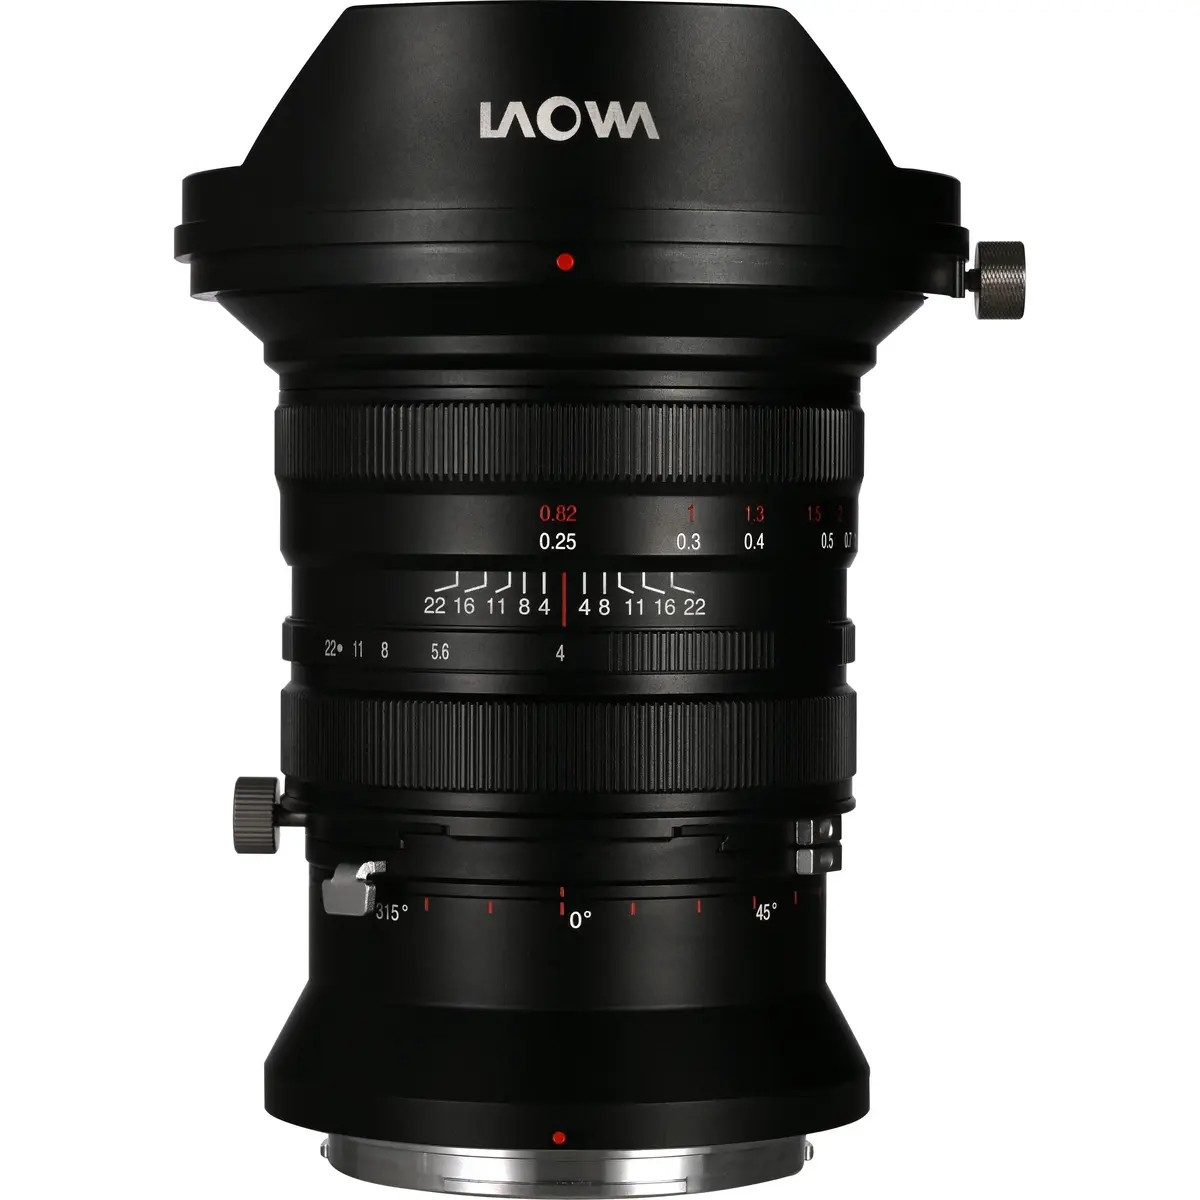 4. Laowa FF S 20mm F4.0 C-Dreamer Zero-D (Fuji GFX)